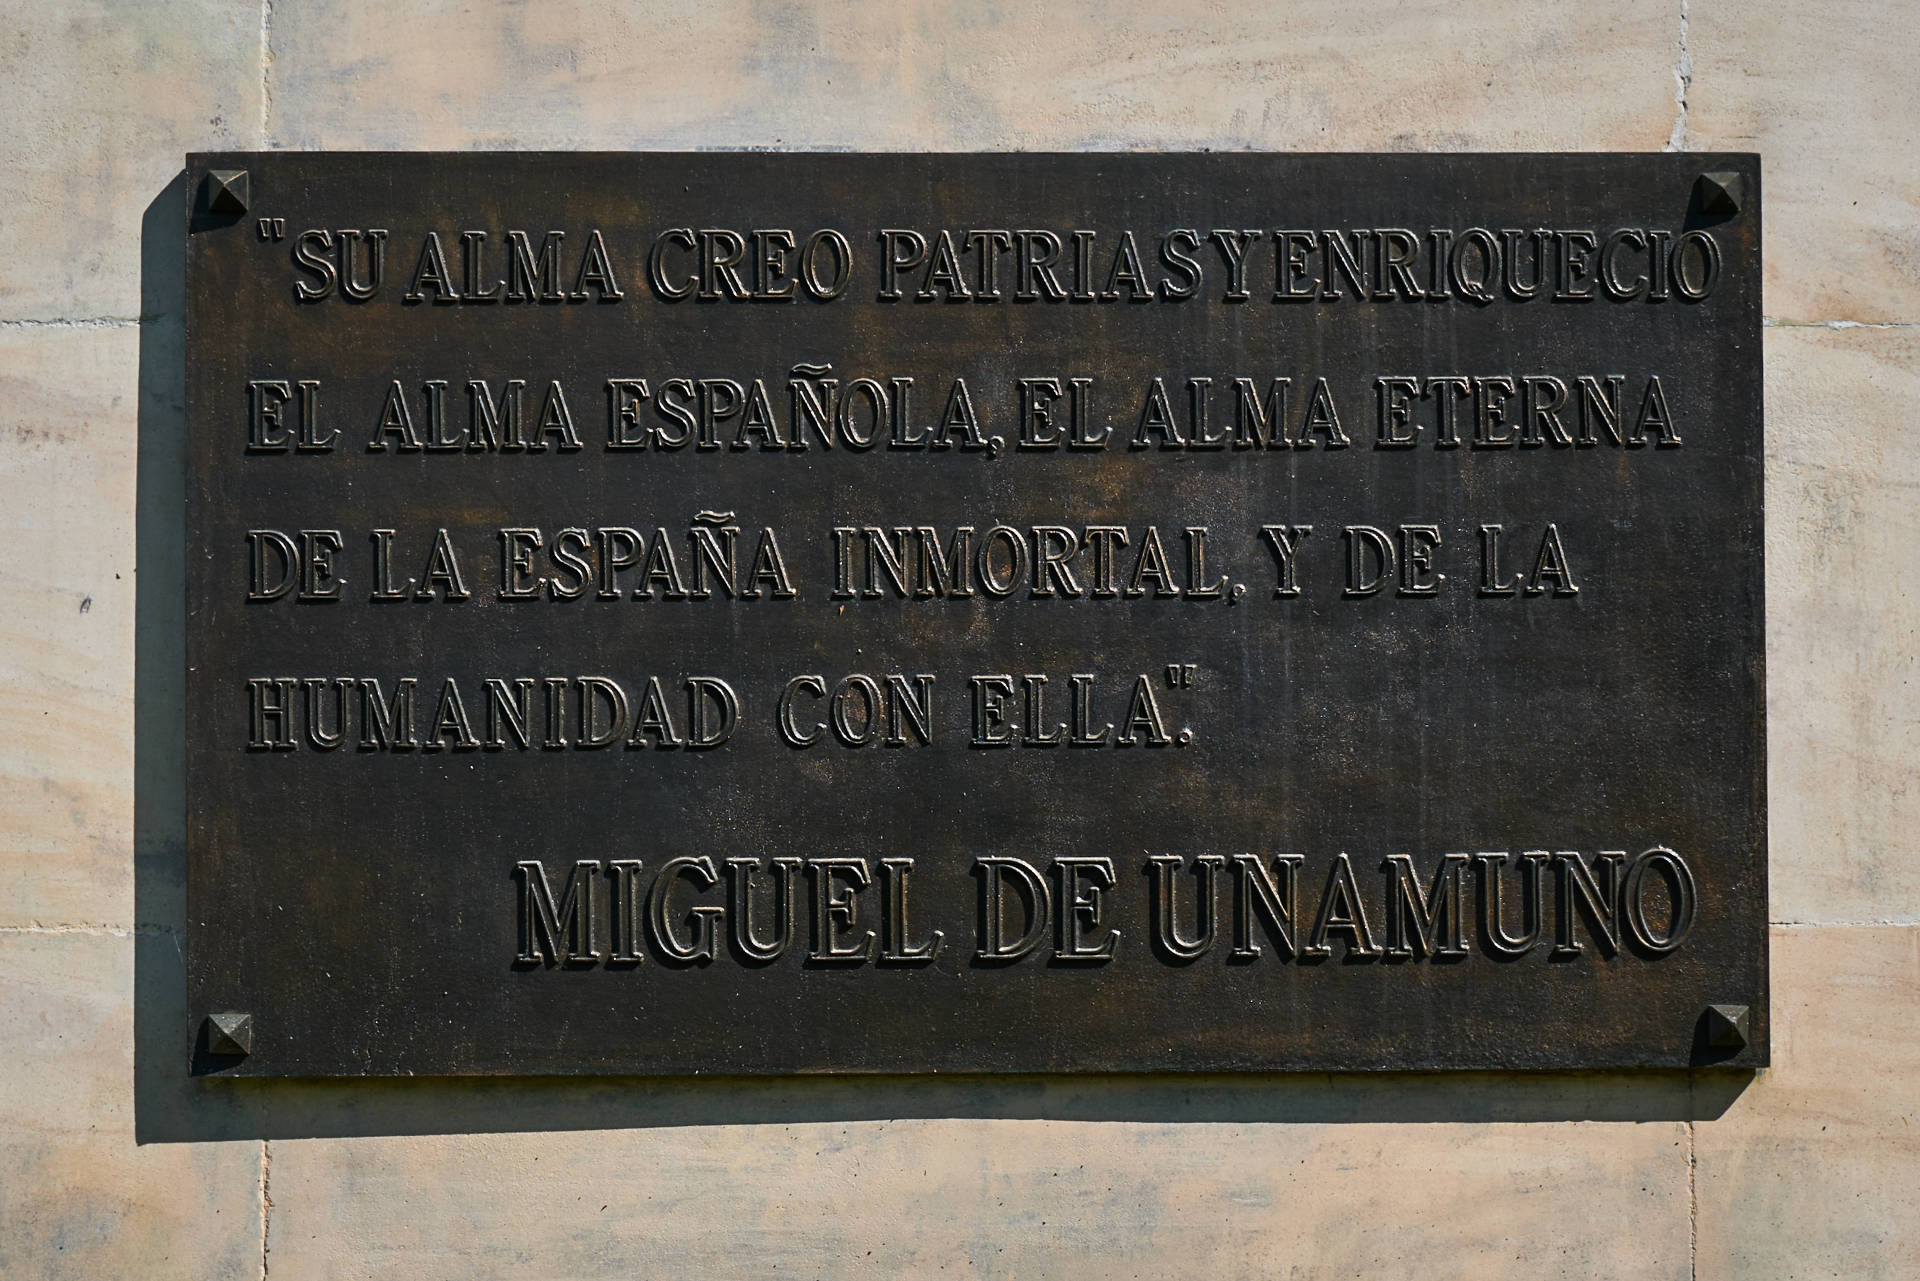 Monument to Simón Bolívar – Parque de María Luisa Sevilla.